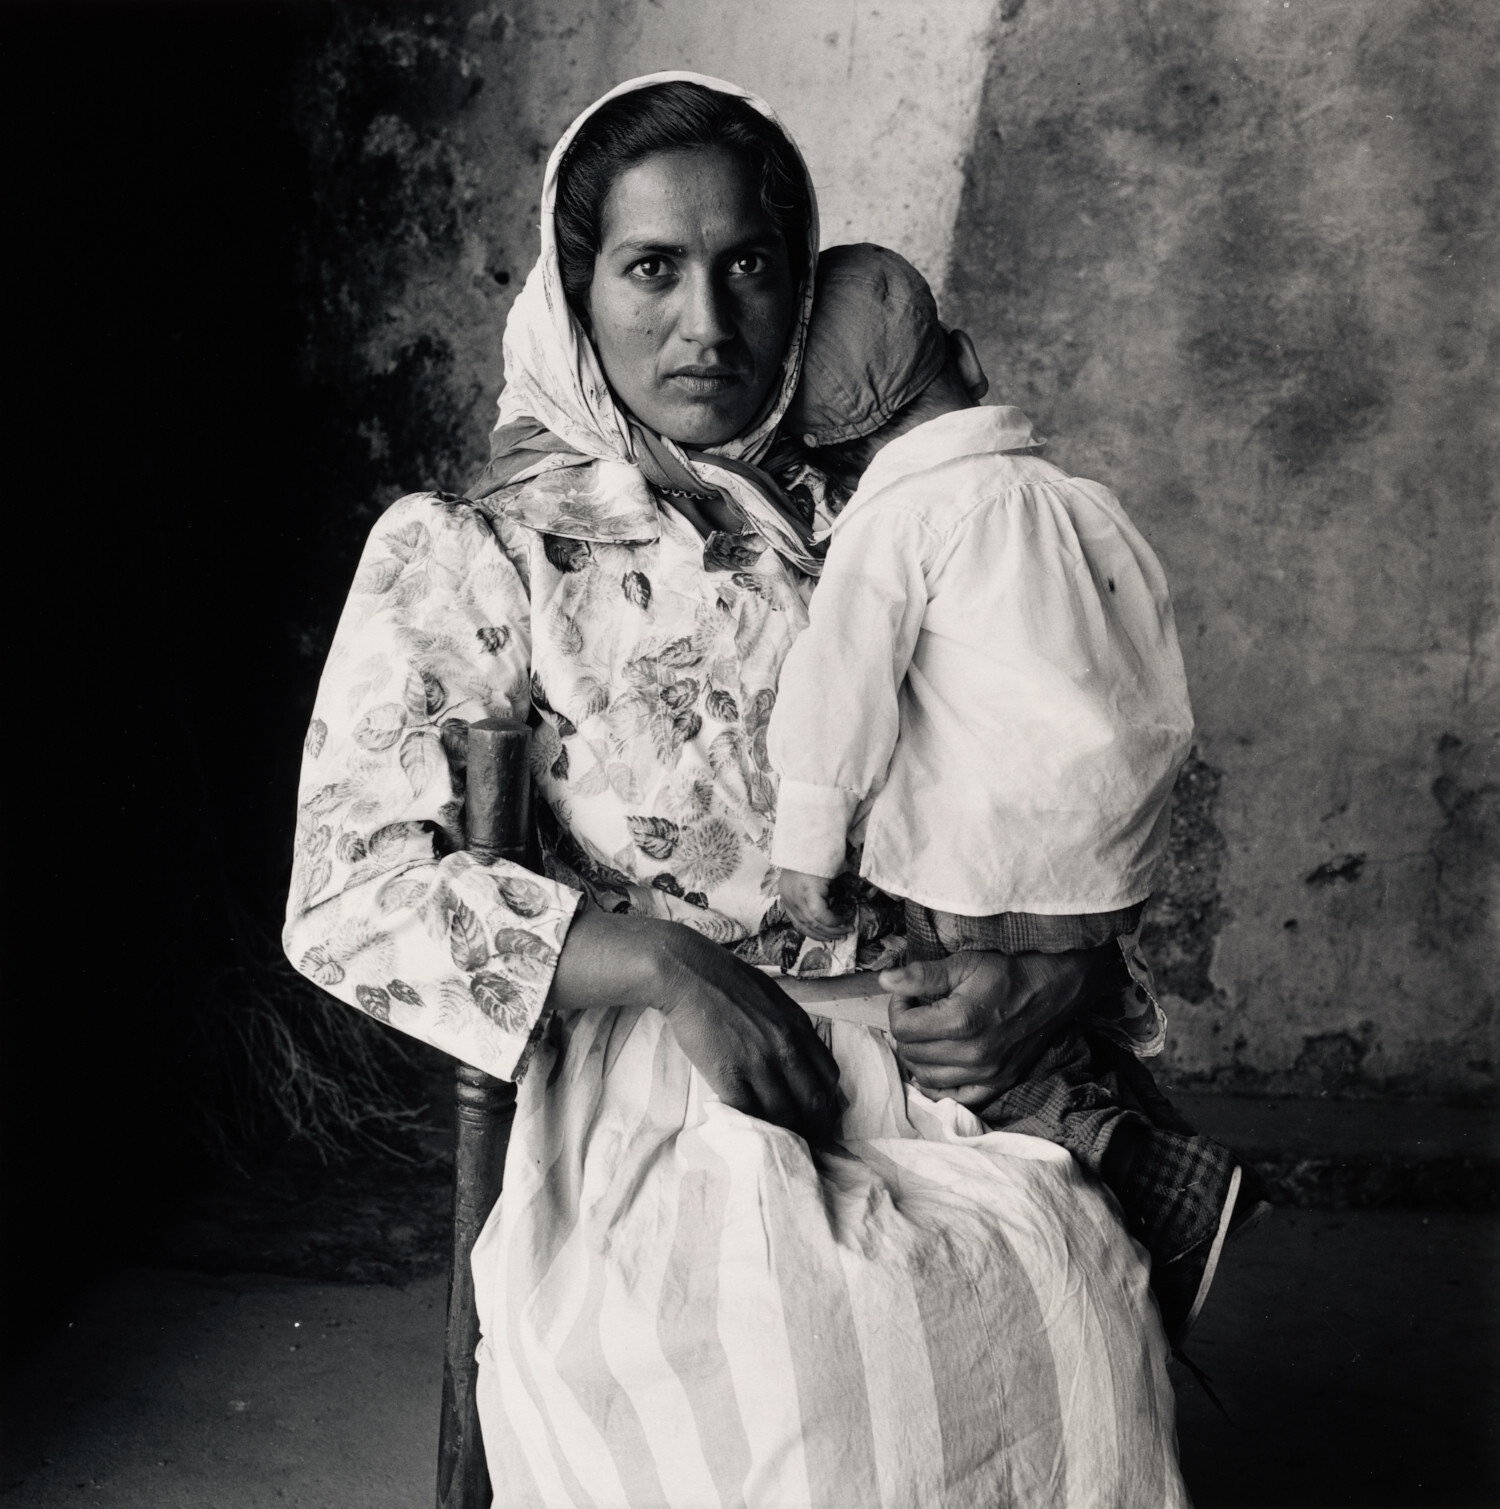 Мать-цыганка со спящим ребенком, Эстремадура, Испания, 1965 год. Фотограф Ирвин Пенн